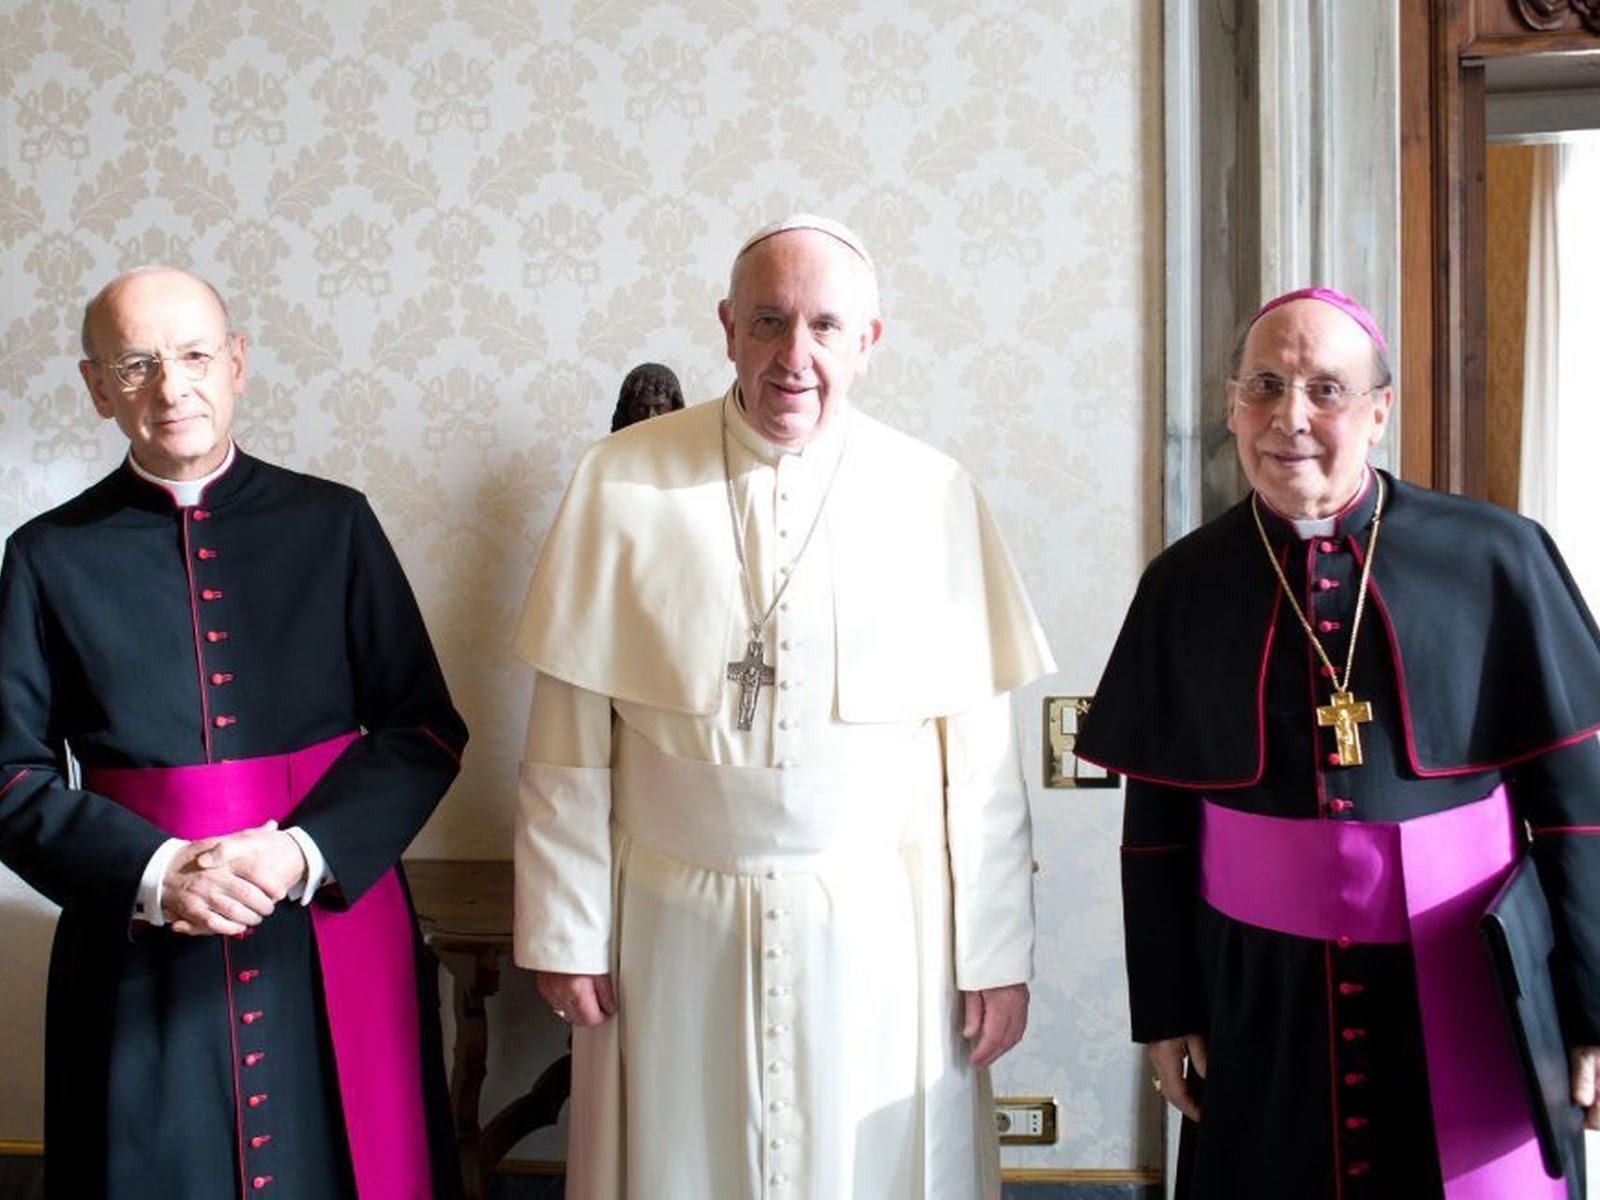  El Opus Dei se dispone a elegir a un nuevo prelado